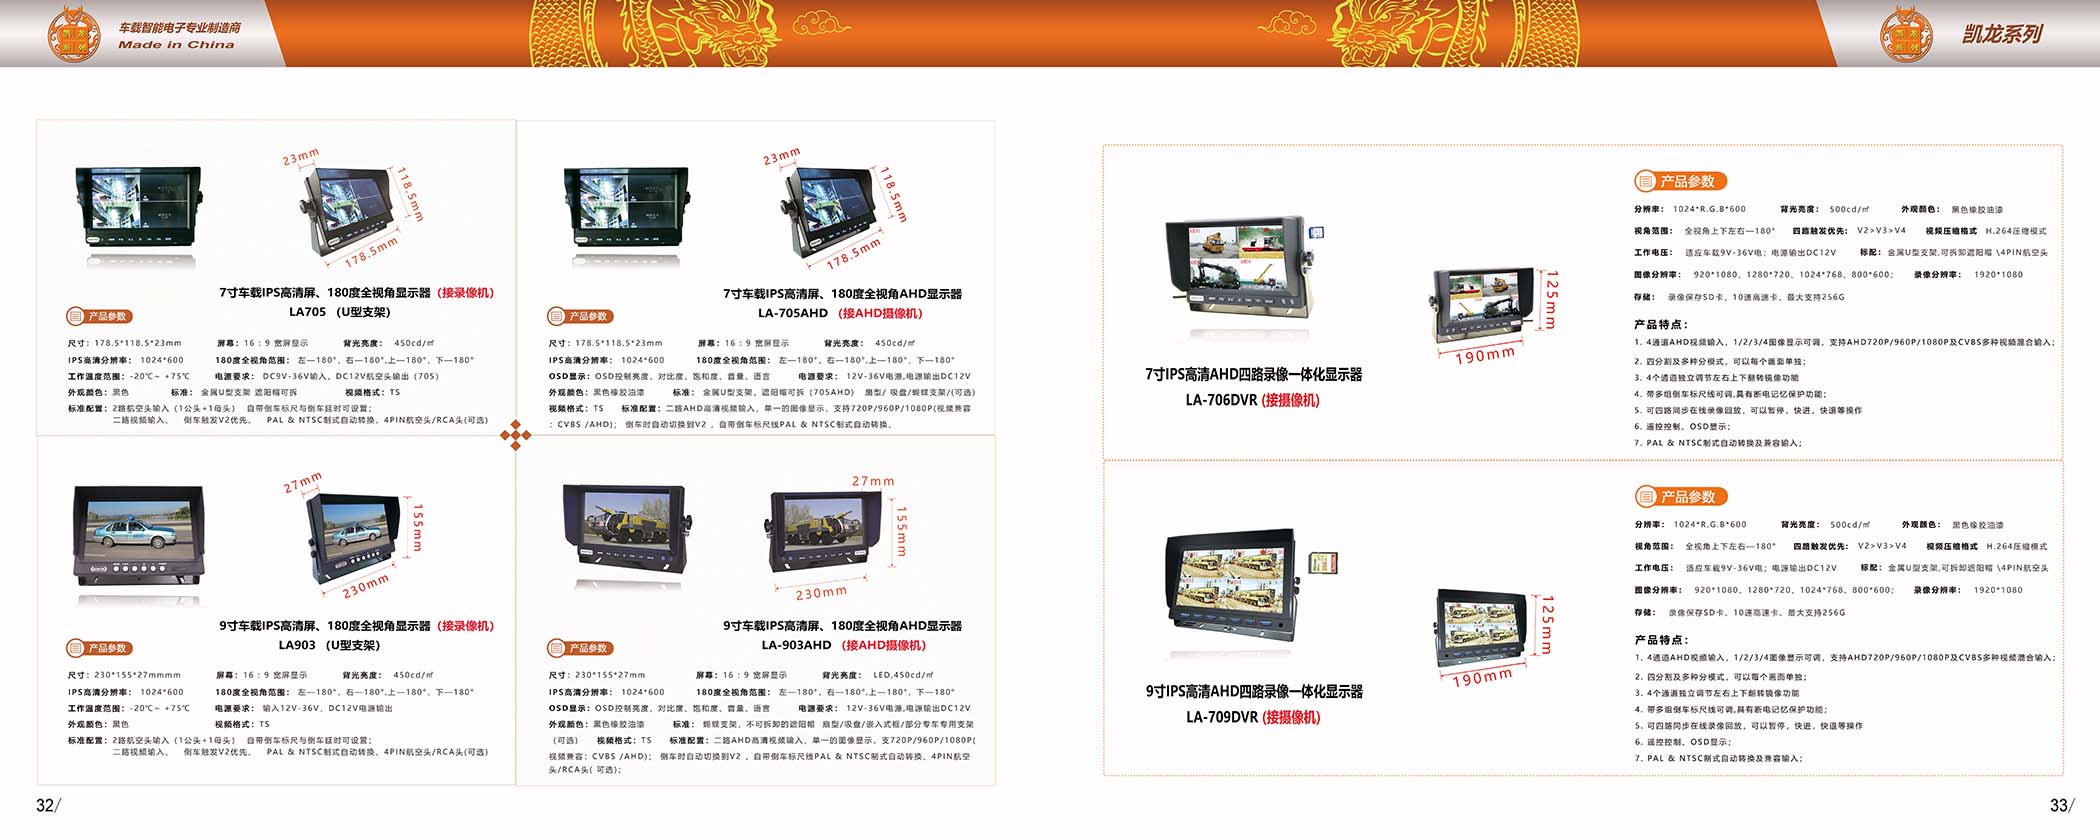 龙安天下电子-产品宣传画册(图13)